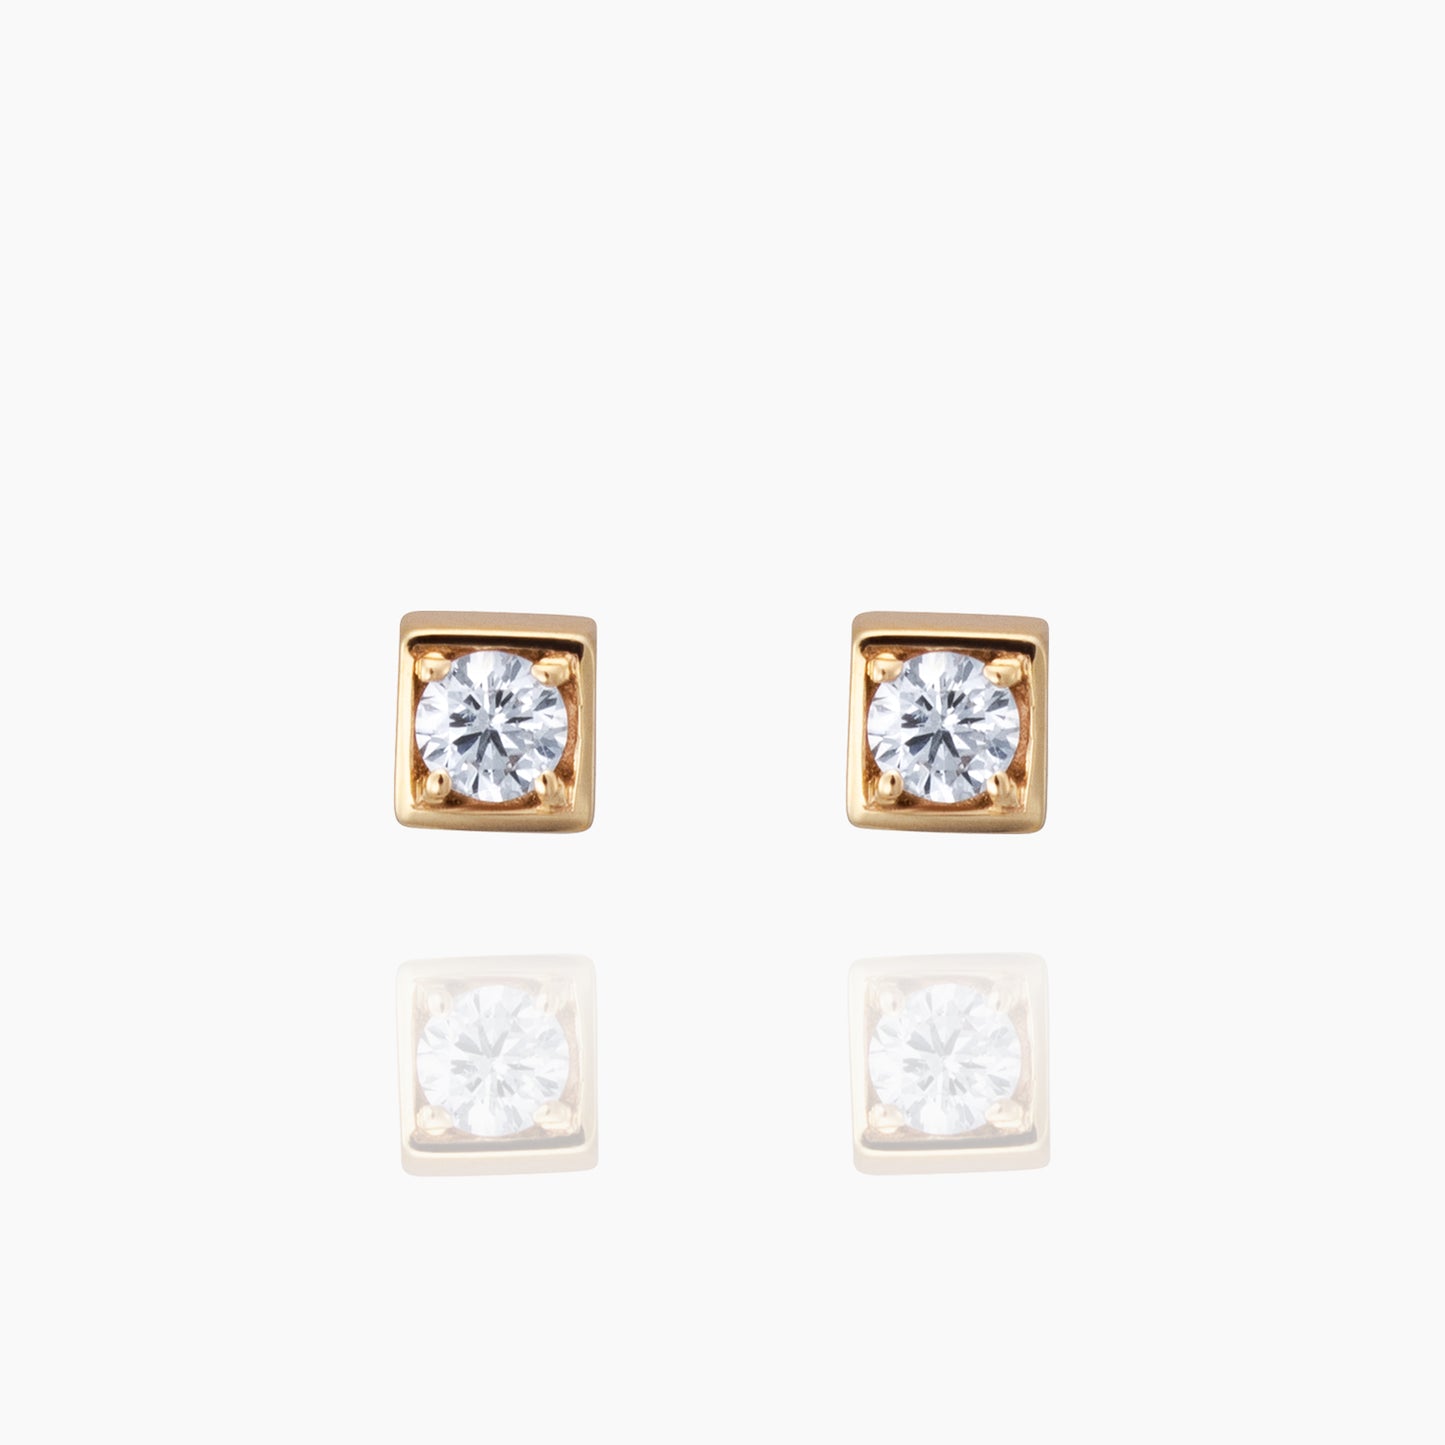 Aiden エイダン ピアス 宝石は天然ダイヤモンド 計0.04ct 素材はK10のイエローゴールド 商品番号MA15 正面